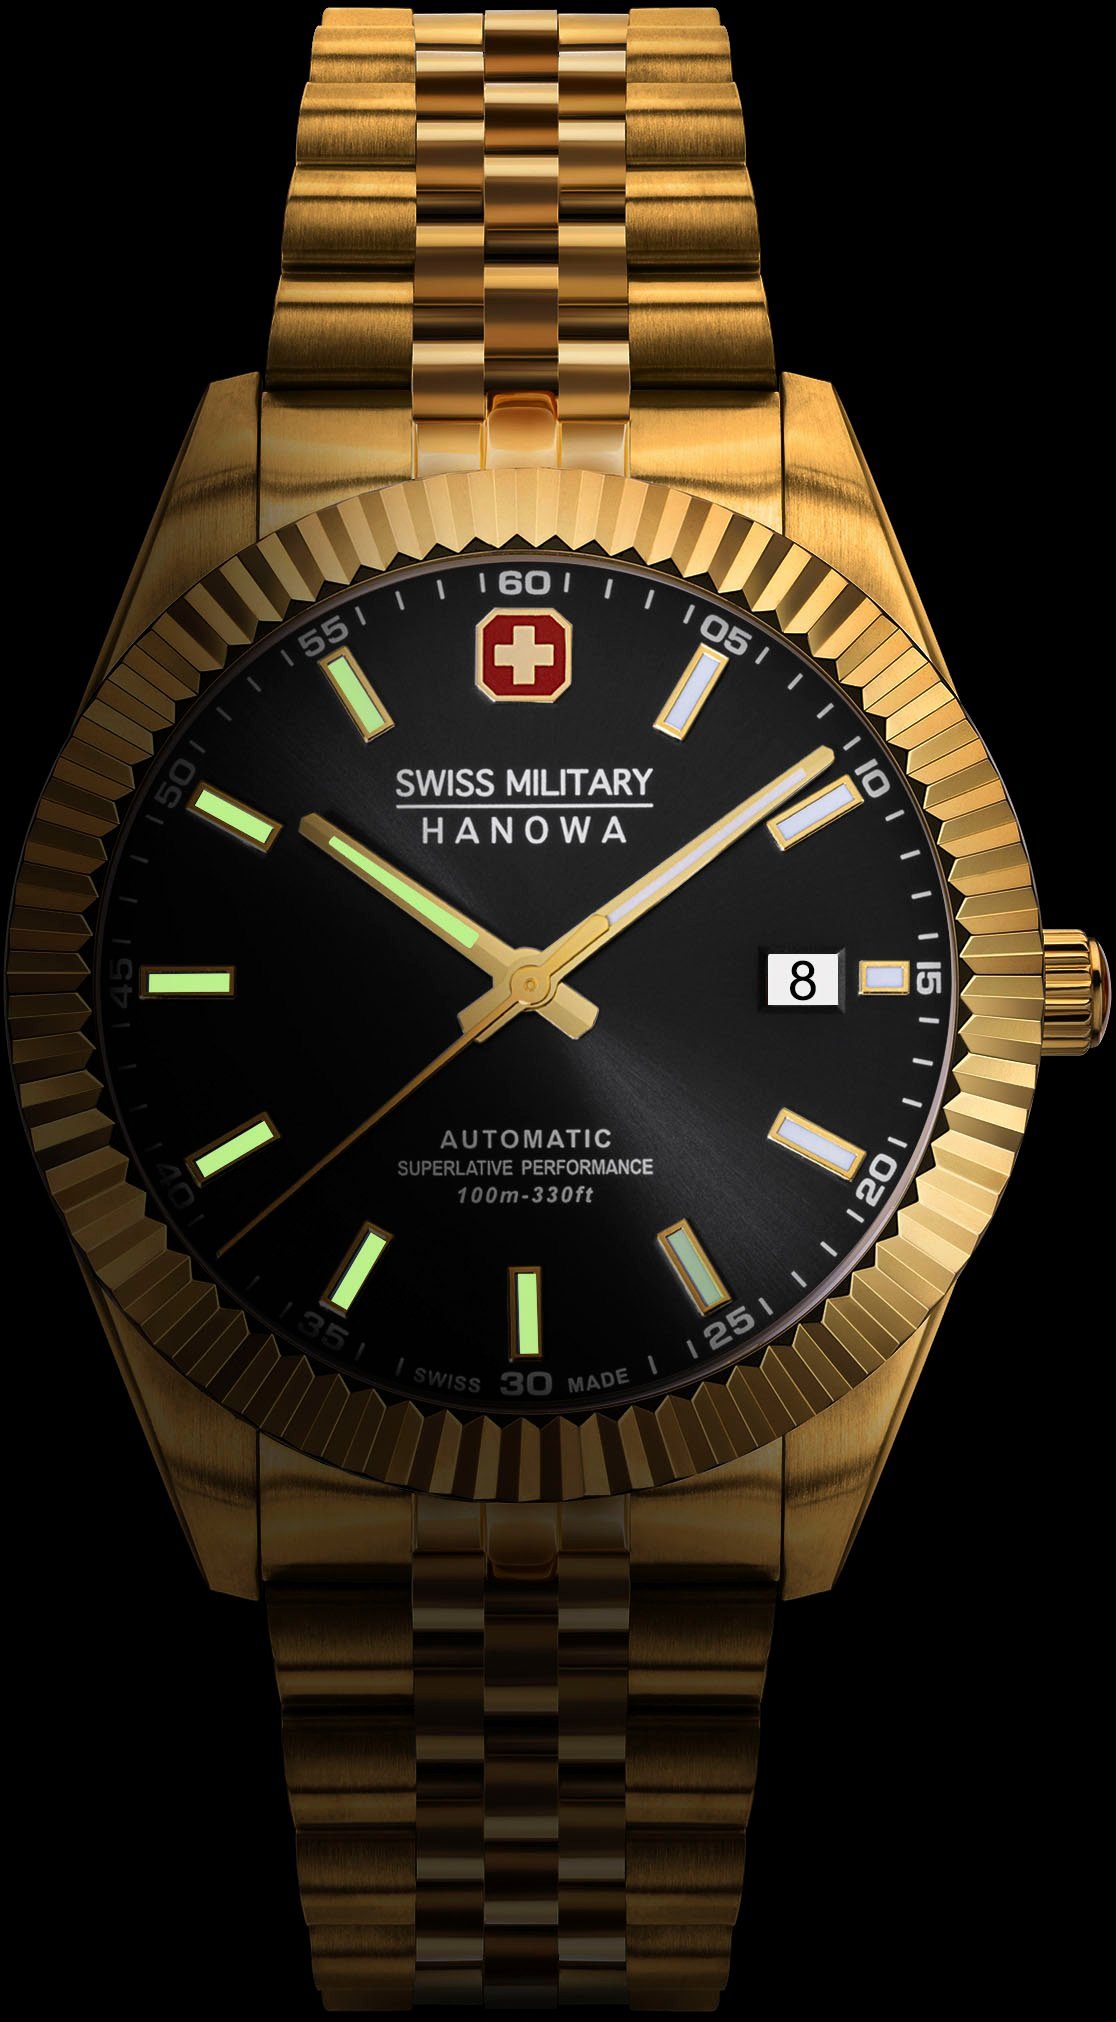 Gold SMWGL0002110 AUTOMATIC Uhr Schweizer Hanowa DILIGENTER, Military Swiss